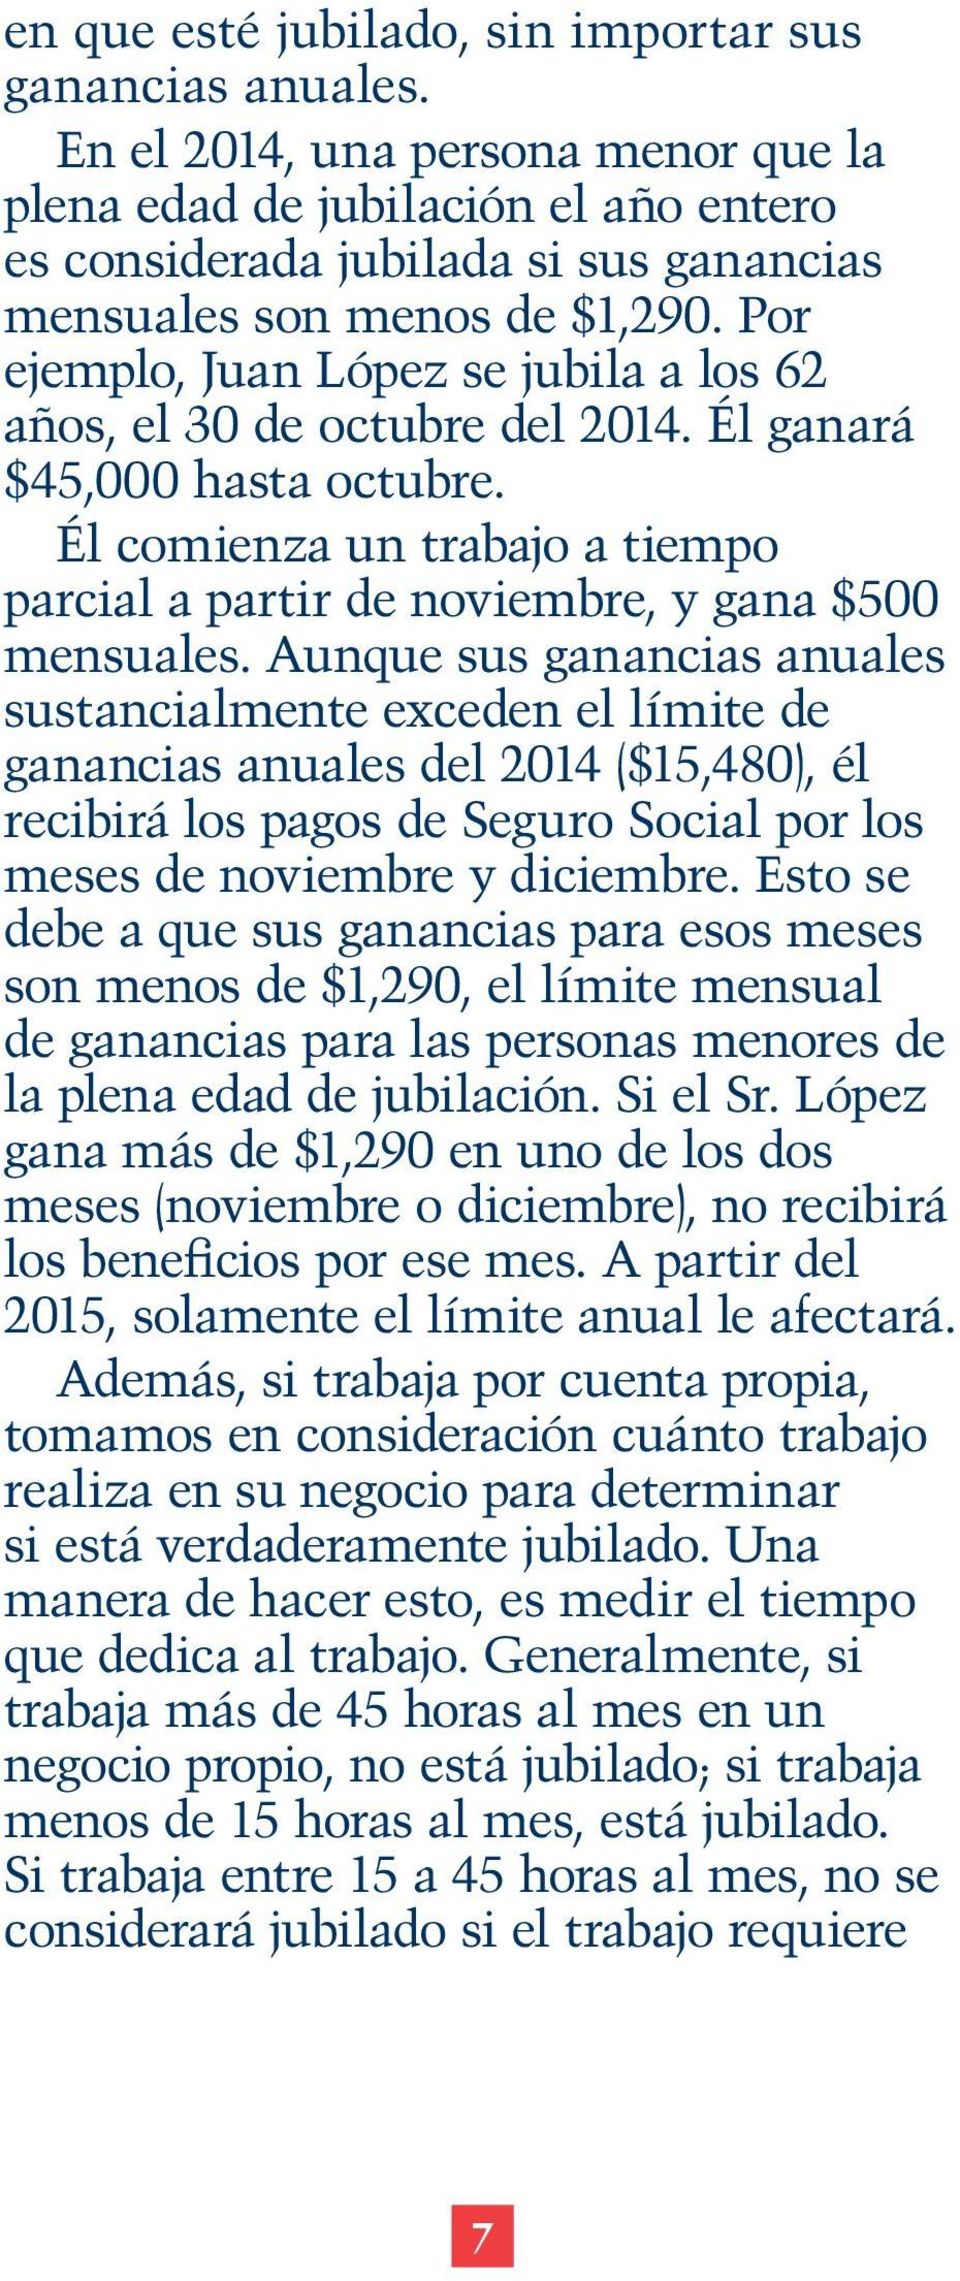 Por ejemplo, Juan López se jubila a los 62 años, el 30 de octubre del 2014. Él ganará $45,000 hasta octubre. Él comienza un trabajo a tiempo parcial a partir de noviembre, y gana $500 mensuales.